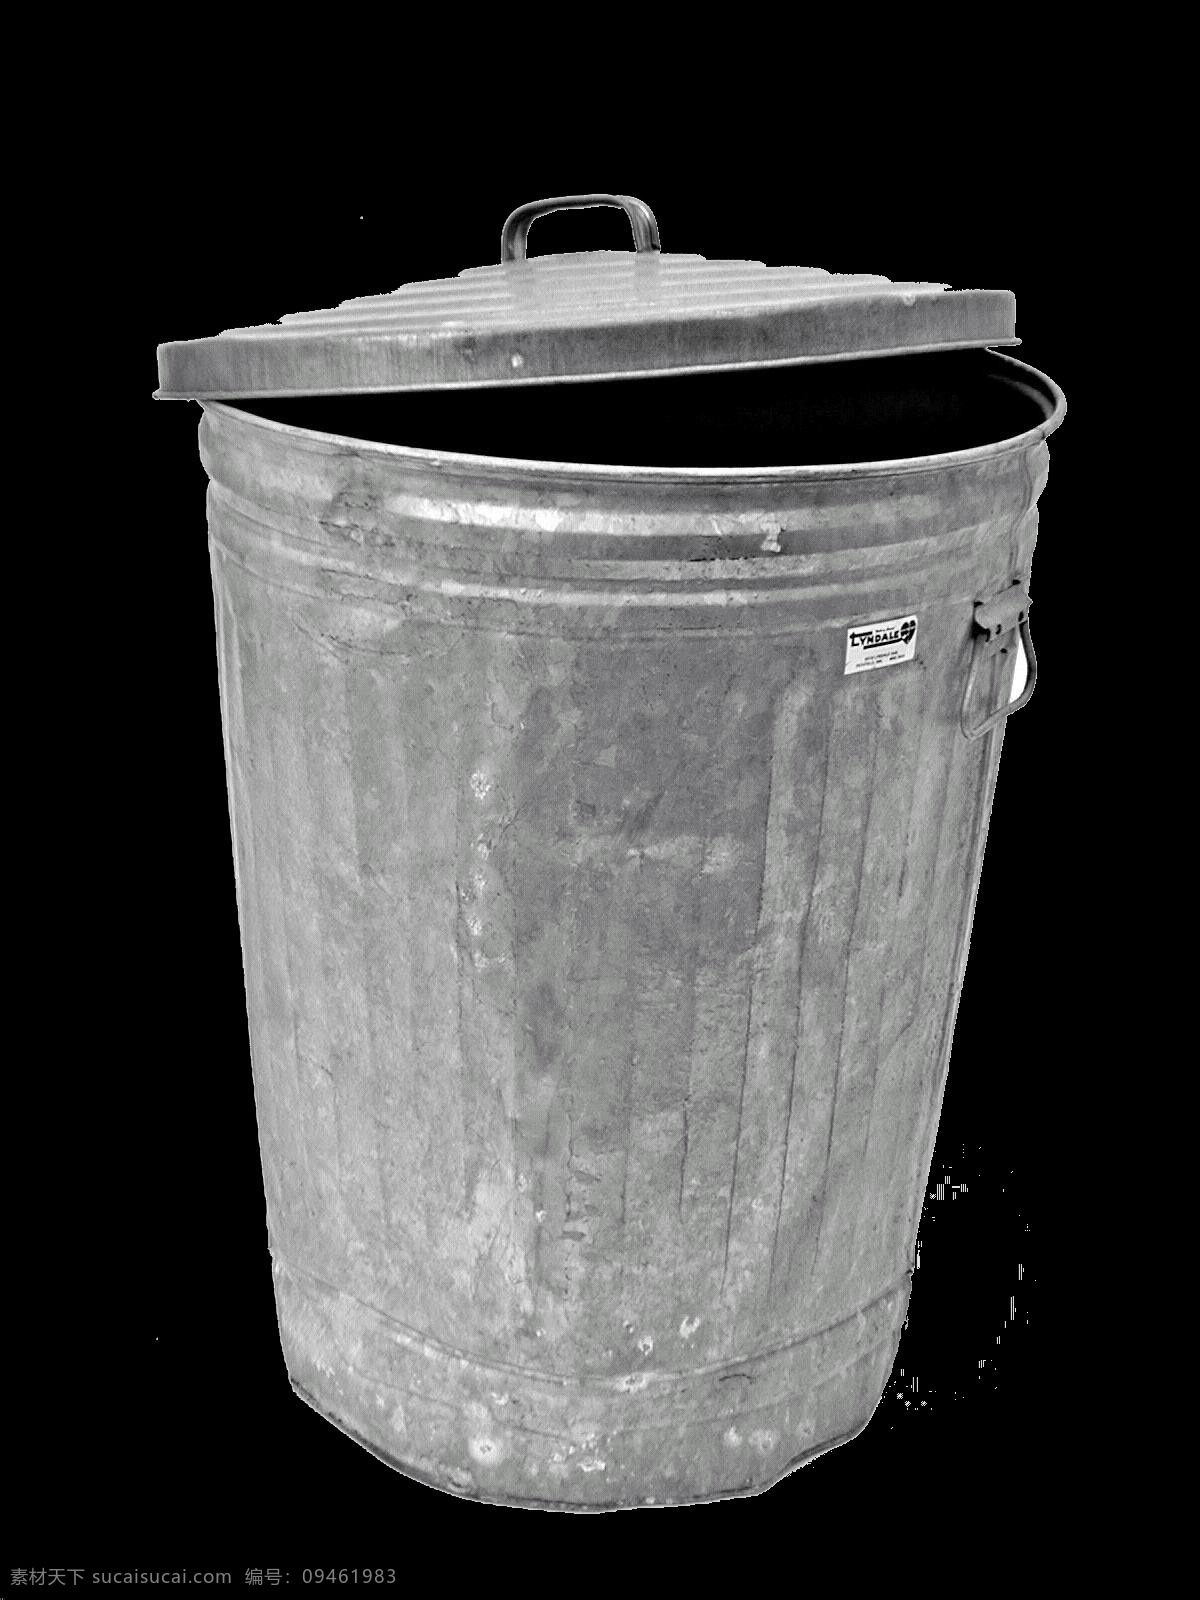 铝制 垃圾桶 免 抠 透明 图 层 户外 创意 家用 圆垃圾桶 铁垃圾桶 家用垃圾桶 金属垃圾桶 塑料垃圾篓 不锈钢垃圾篓 金属垃圾篓